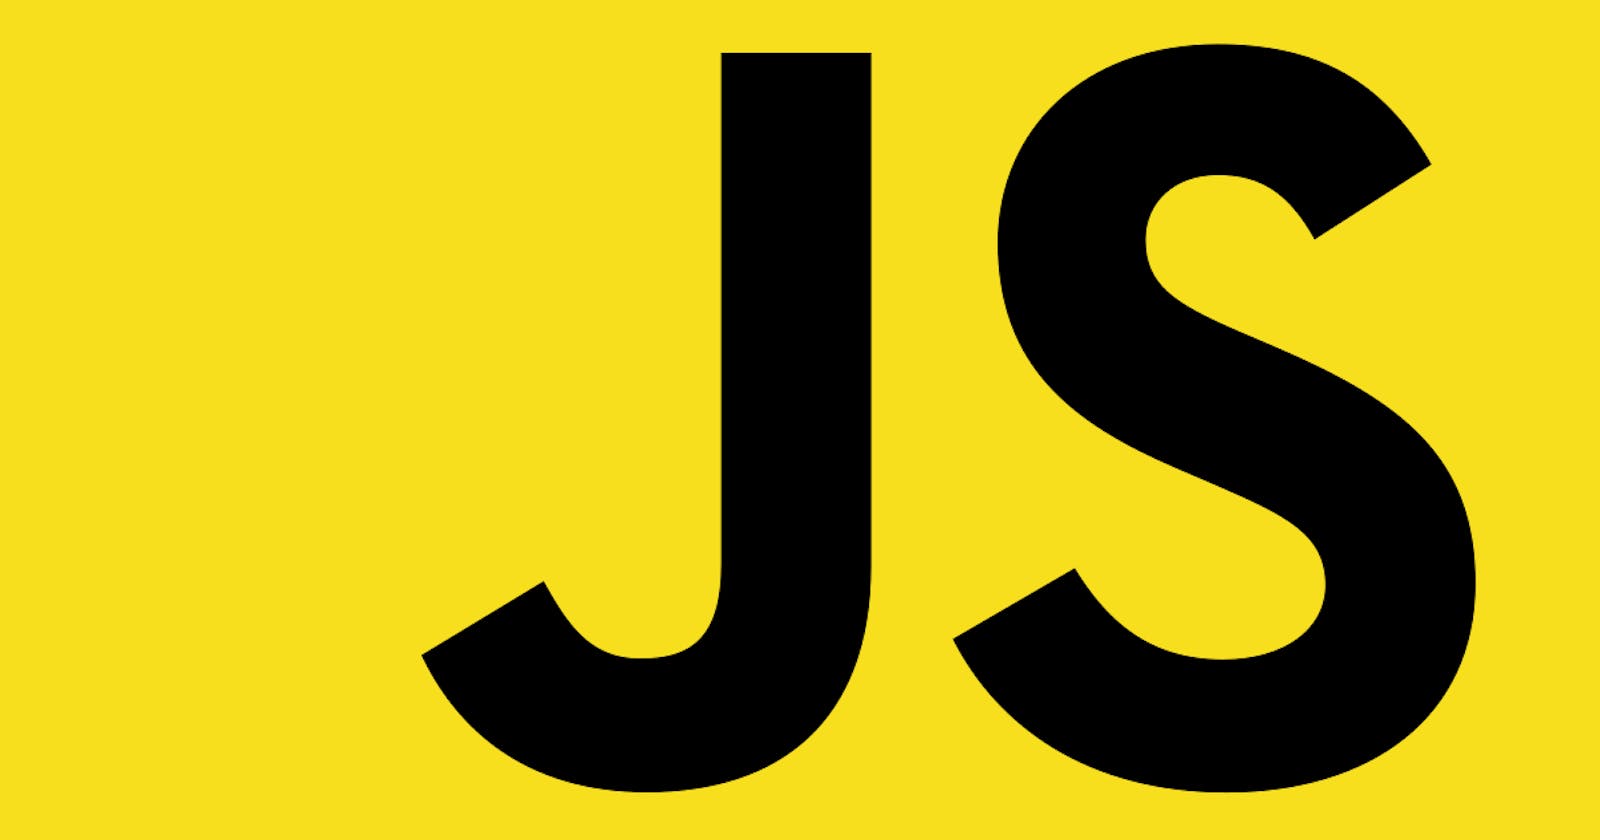 Javascript fundamentals